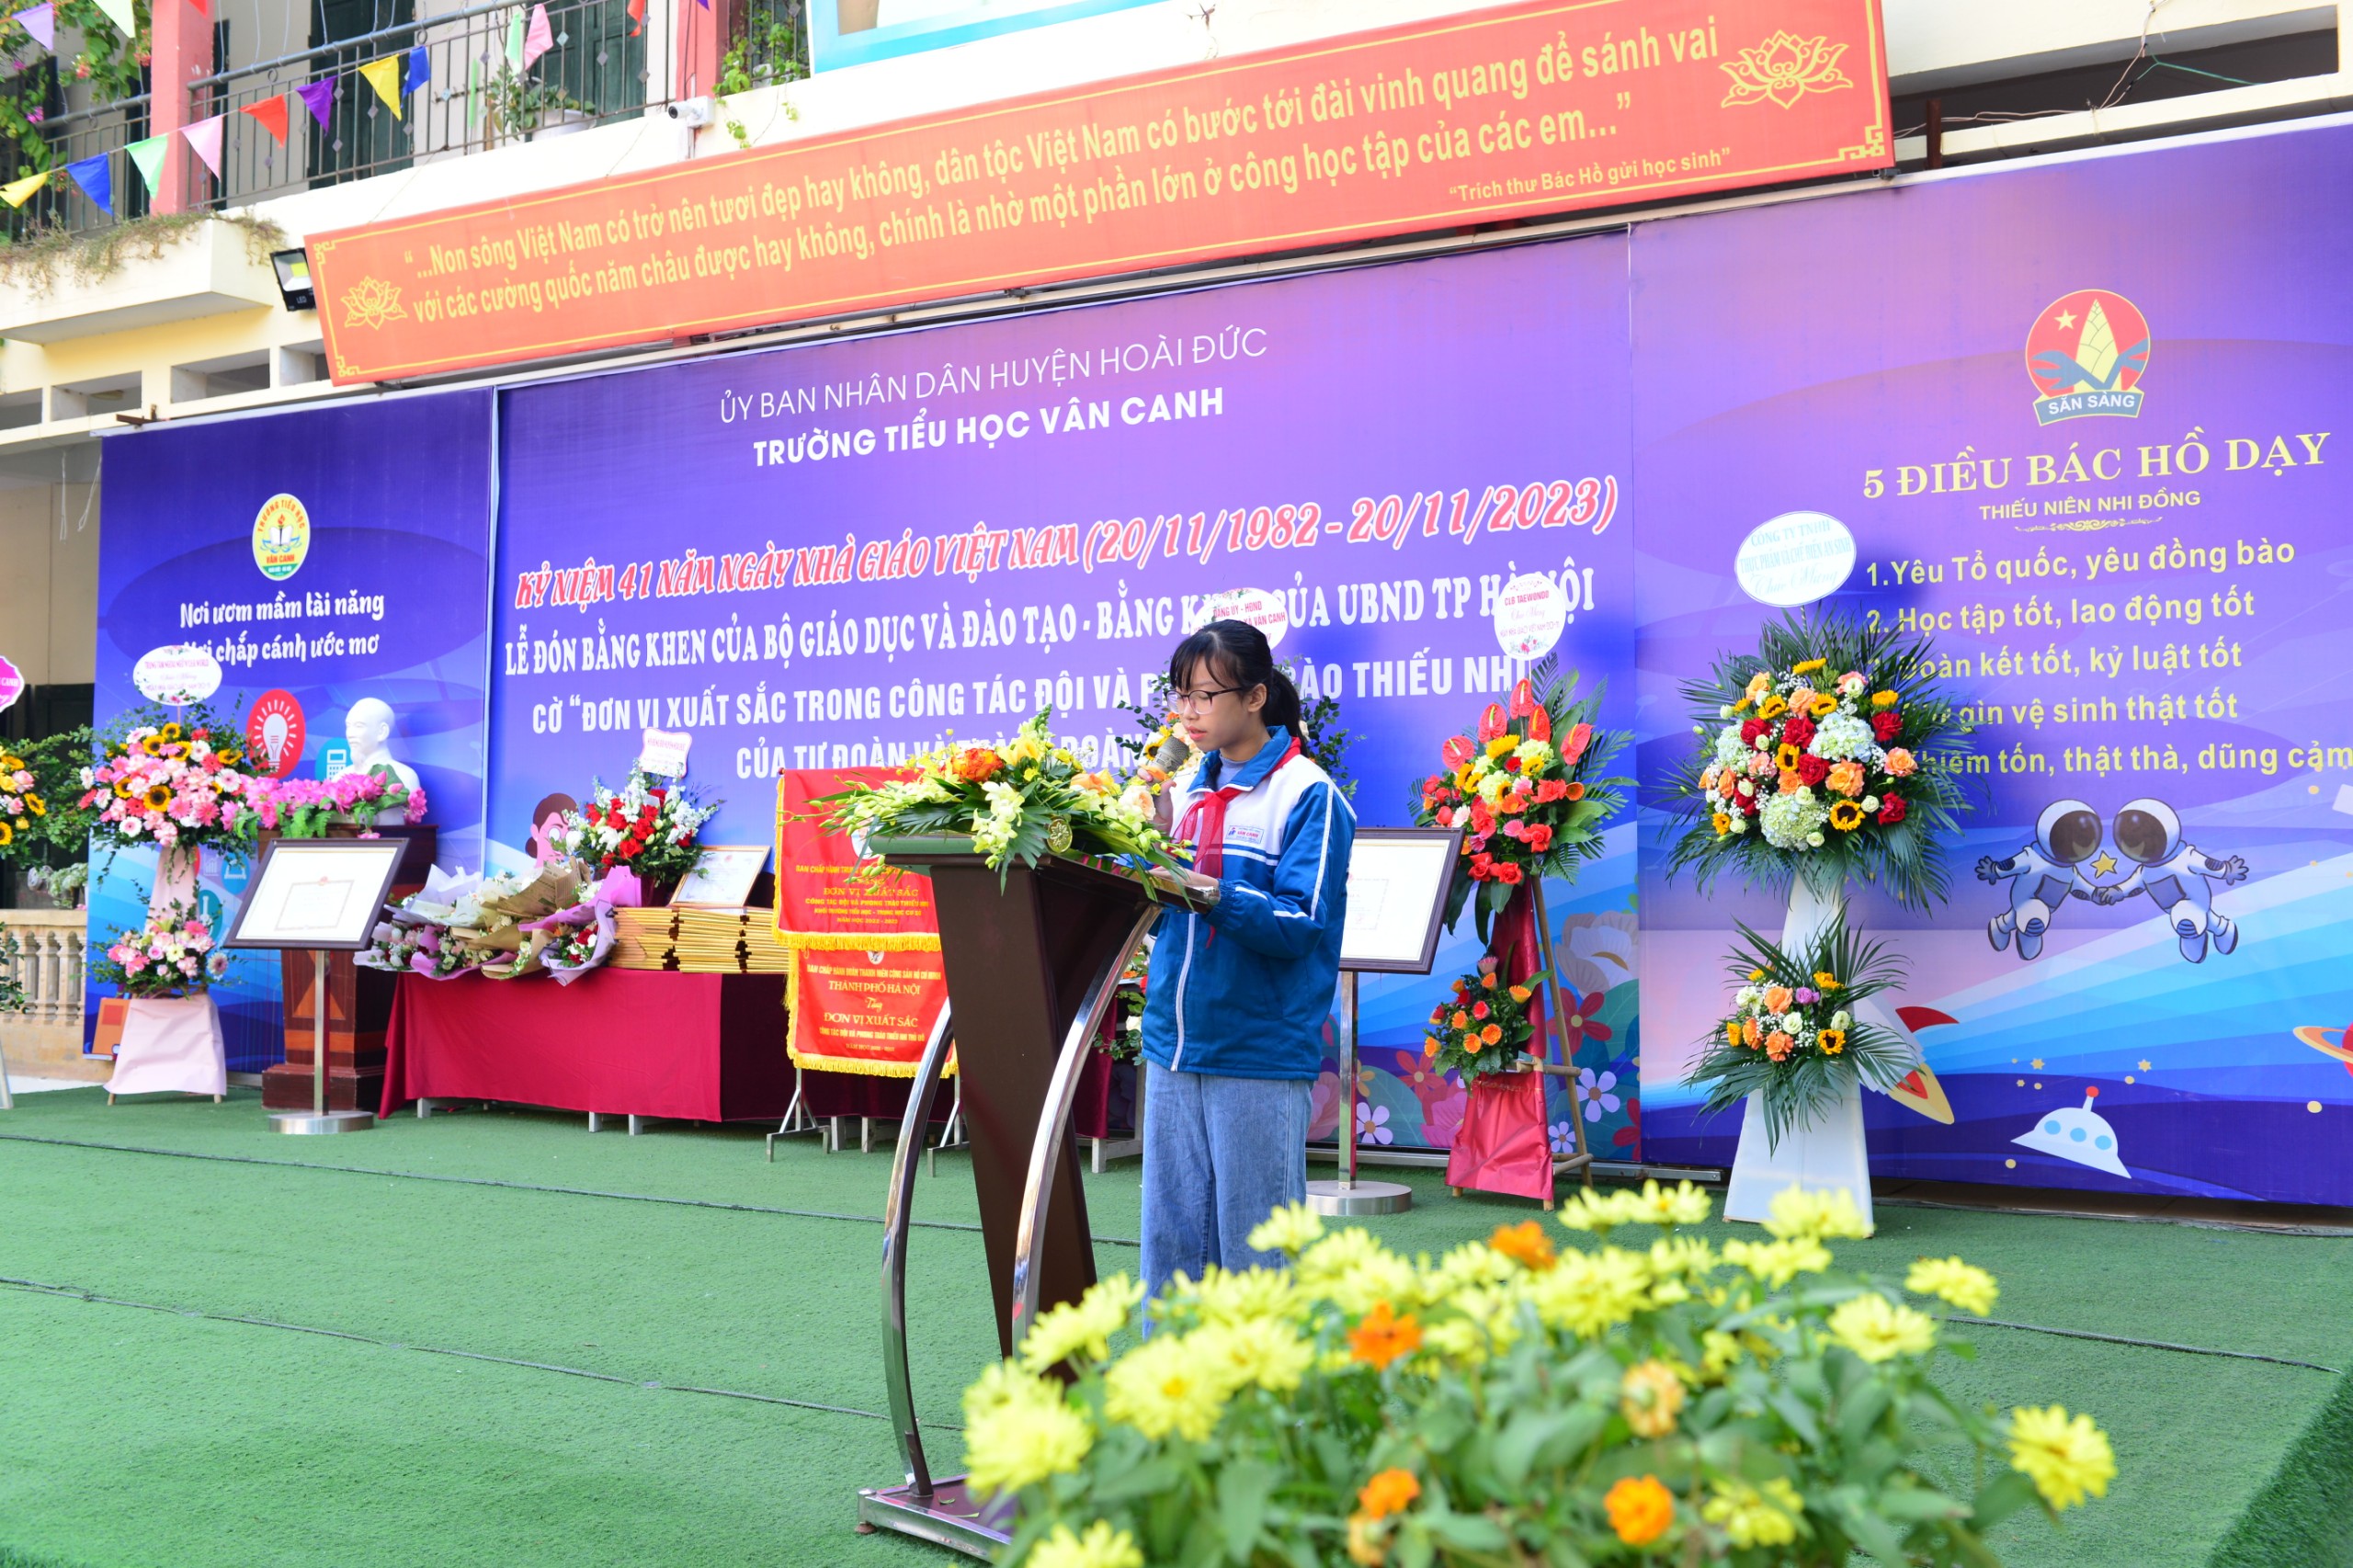 Trường Tiểu học Vân Canh kỉ niệm 41 năm ngày Nhà giáo Việt Nam (20/11/1982 - 20/11/2023).